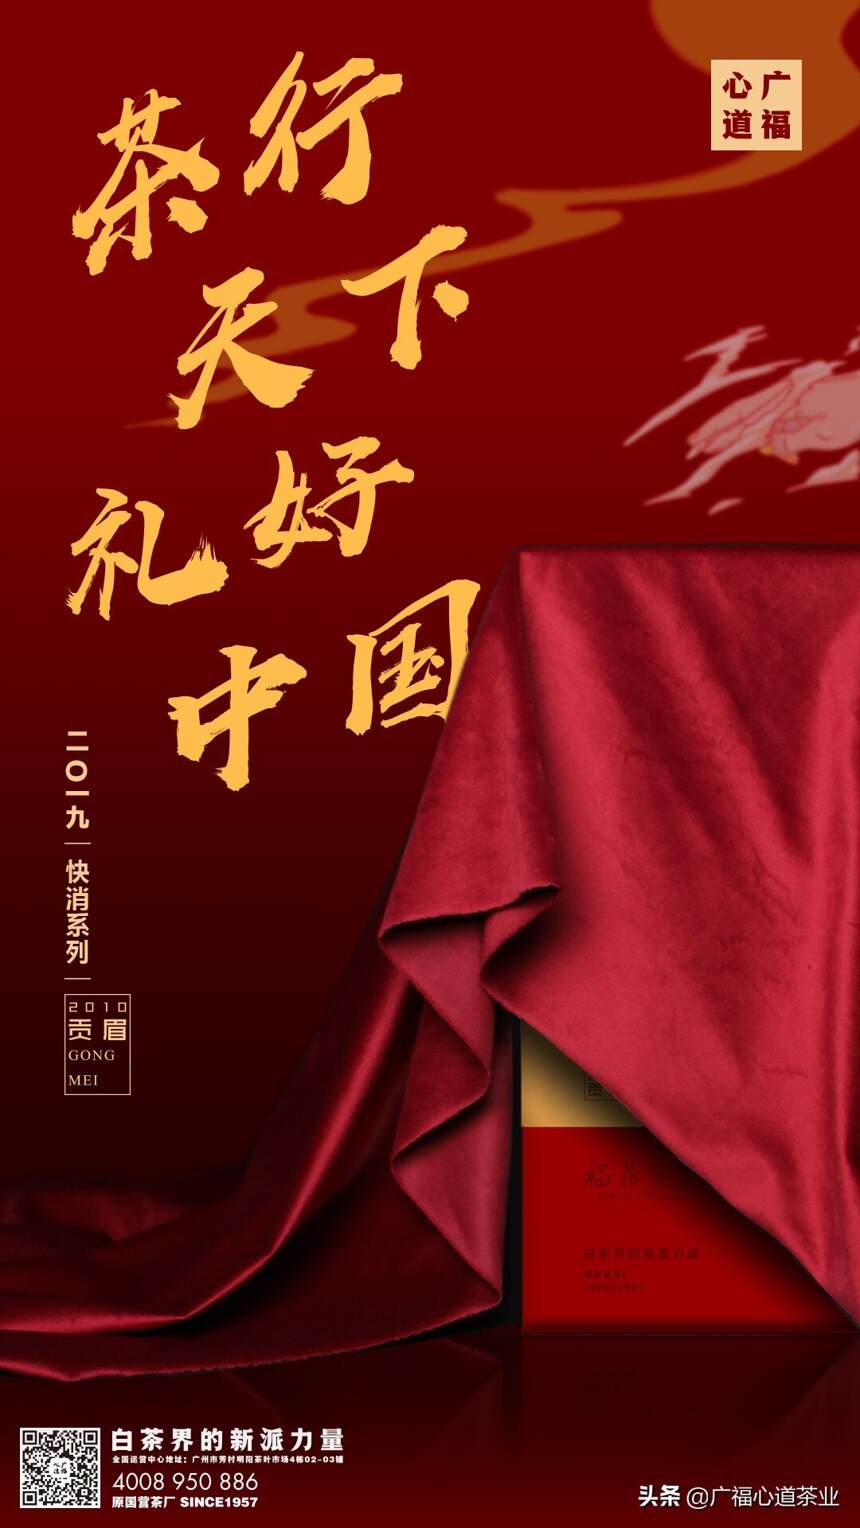 中国红、儒礼、这款新品是给传统文化的一封情书｜心品上市